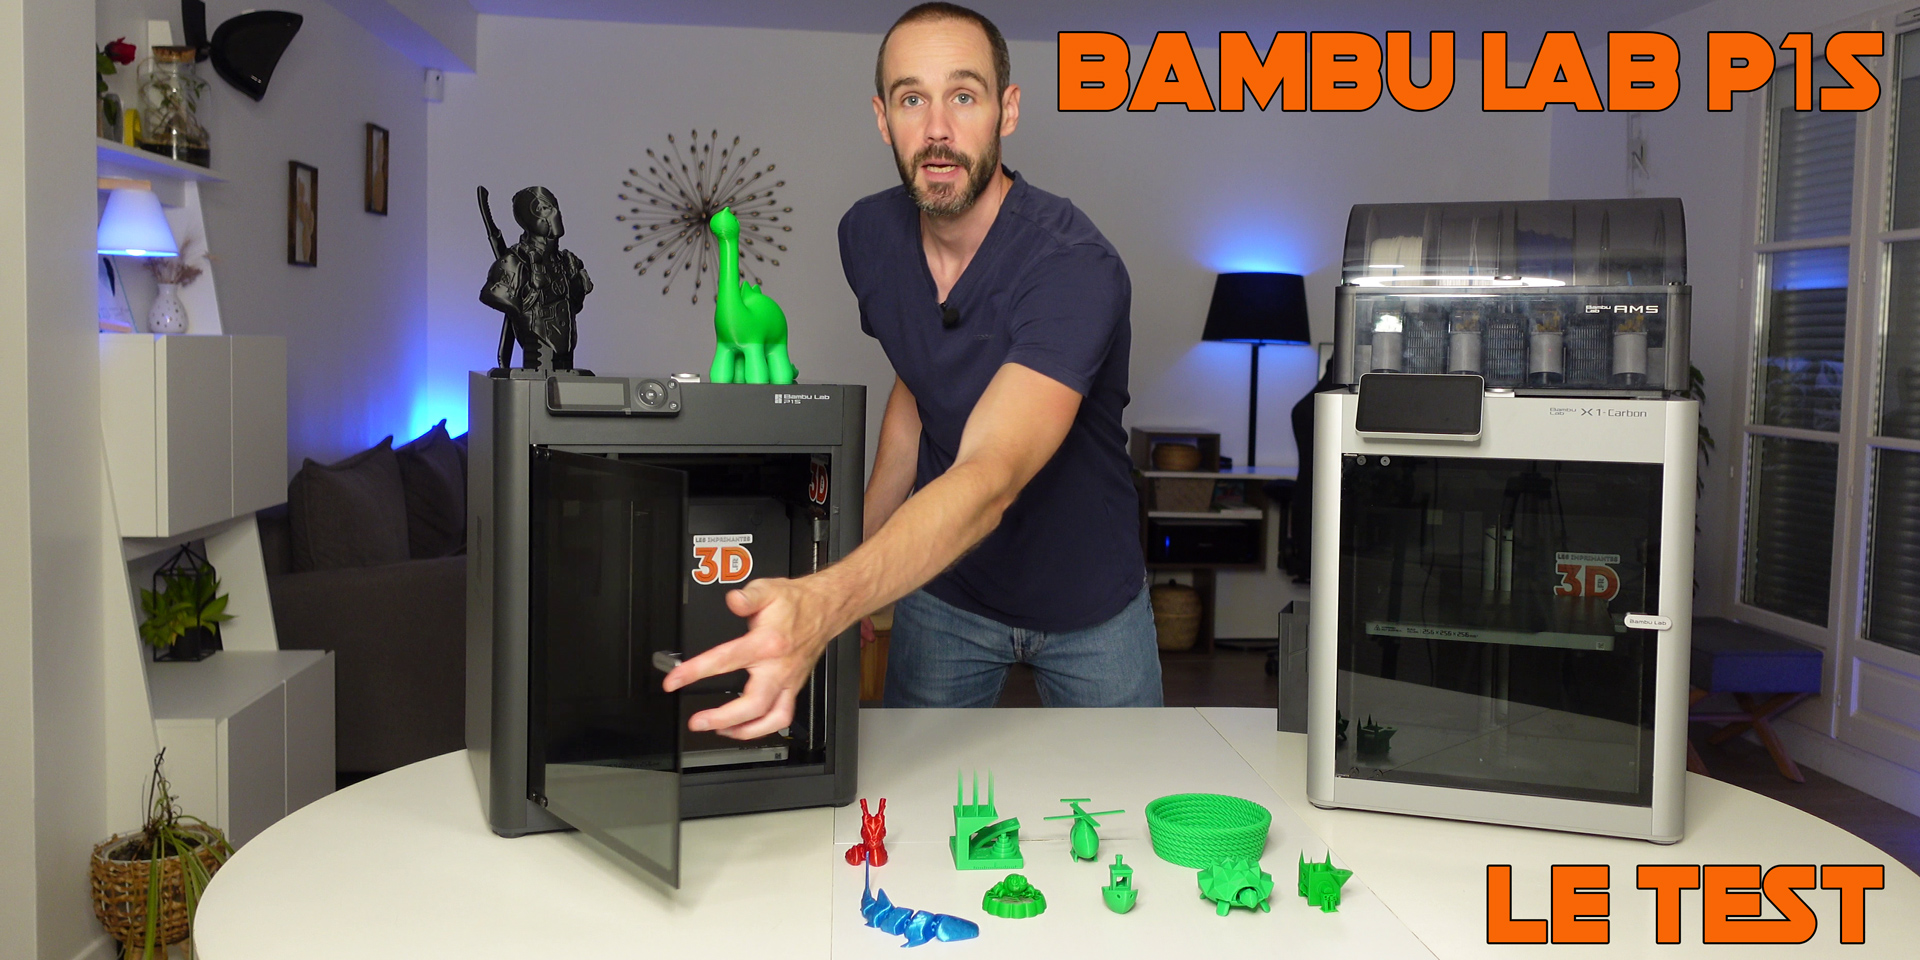 Bambu Lab P1S, le test  Les Imprimantes 3D .fr